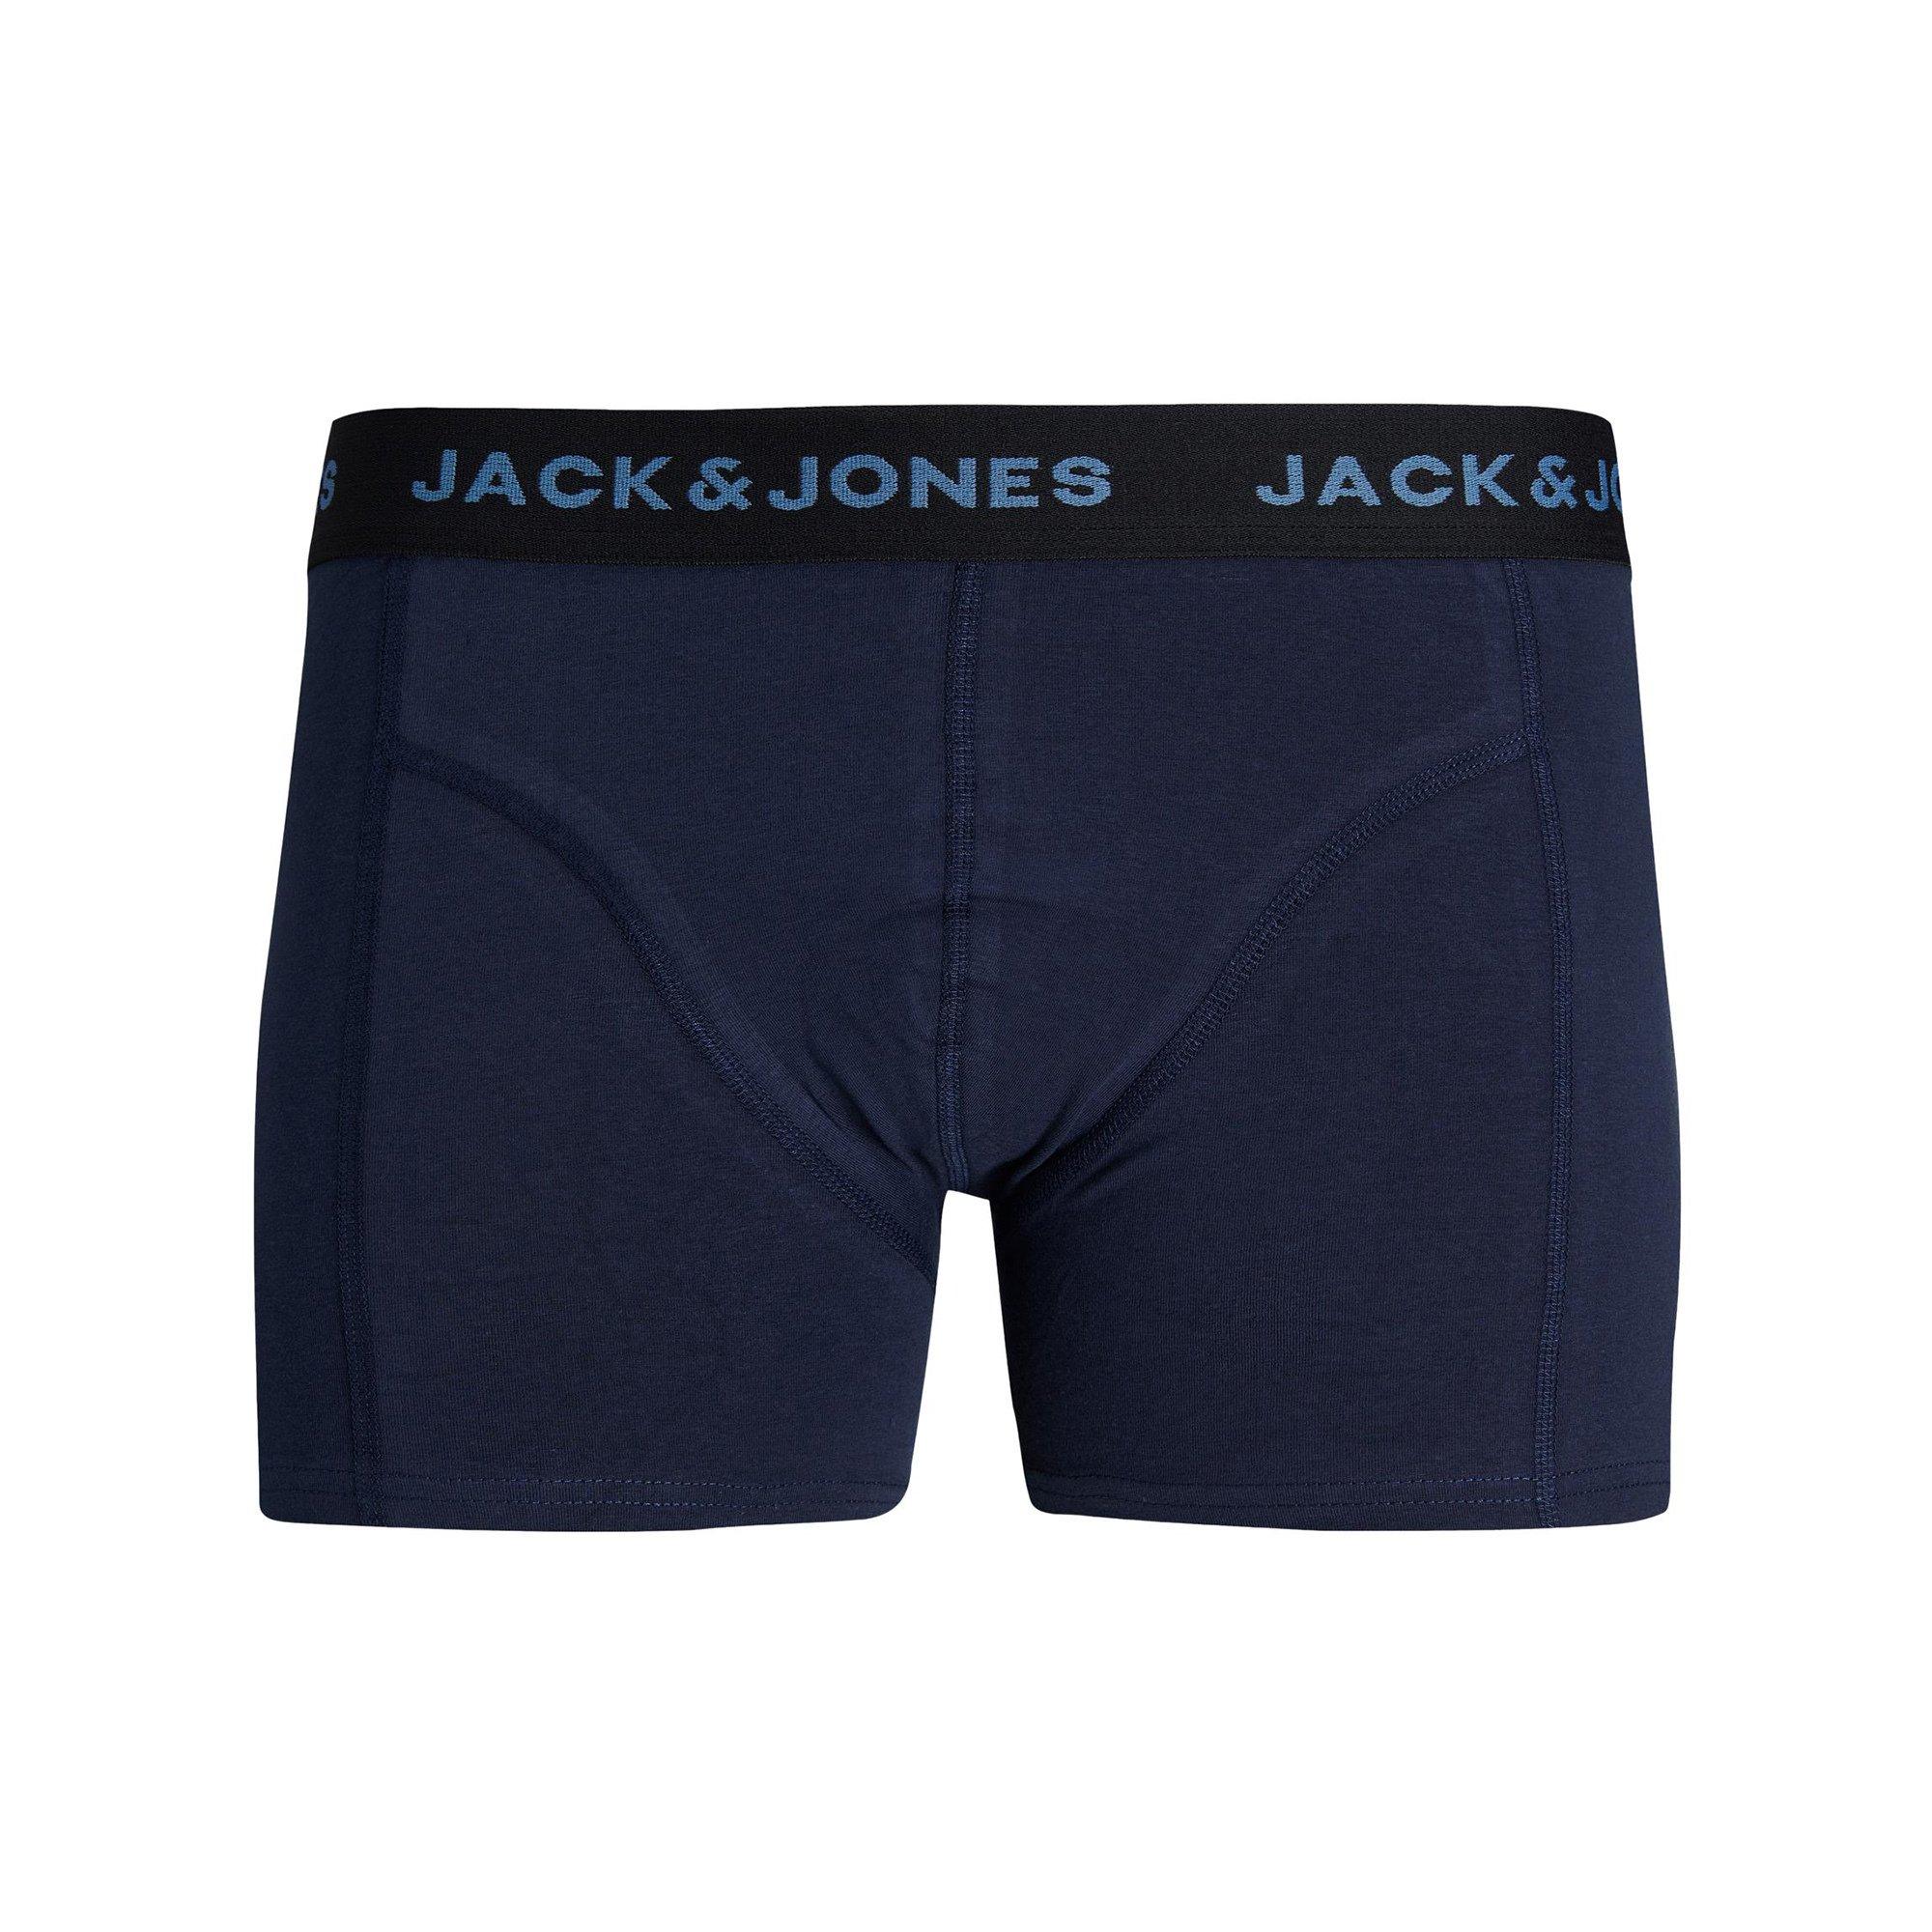 Jack & Jones Junior  Triopack, Pantys 